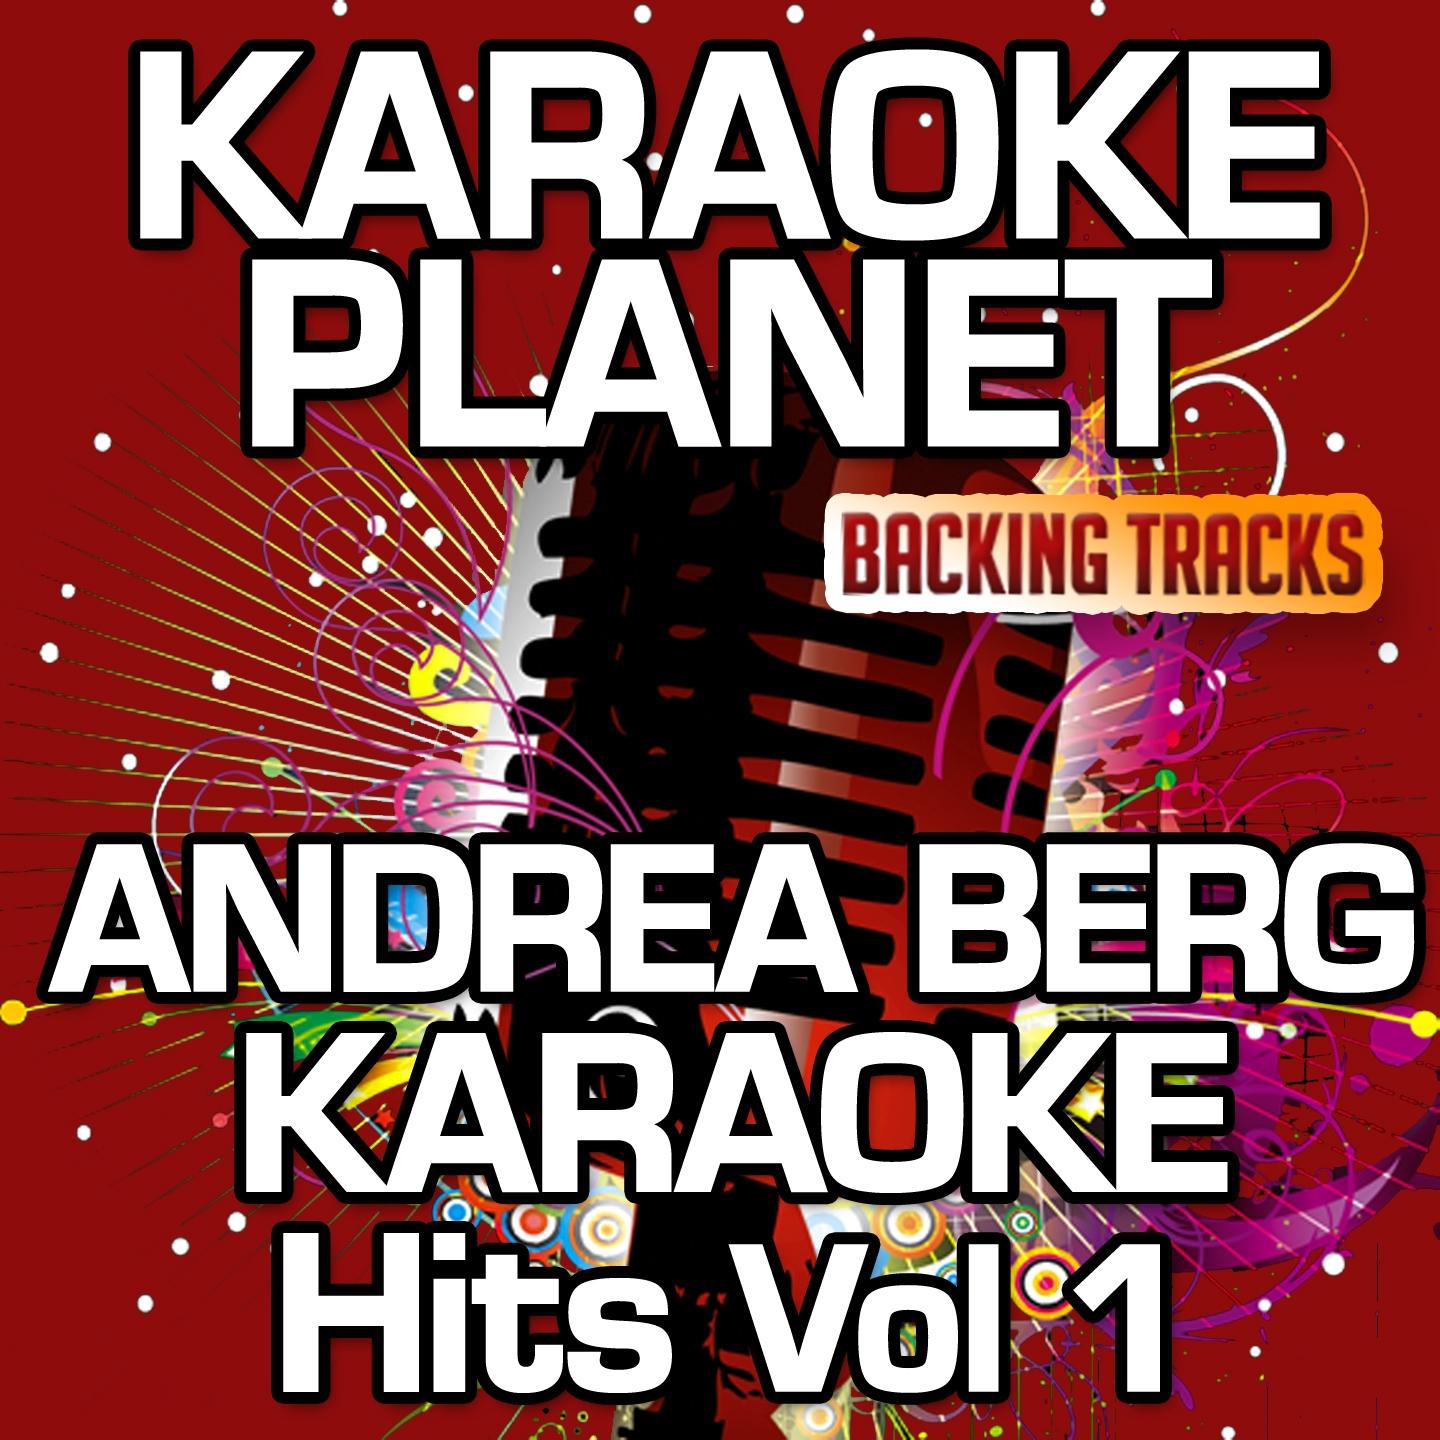 Andrea Berg Karaoke Hits, Vol. 1 (Karaoke Planet)